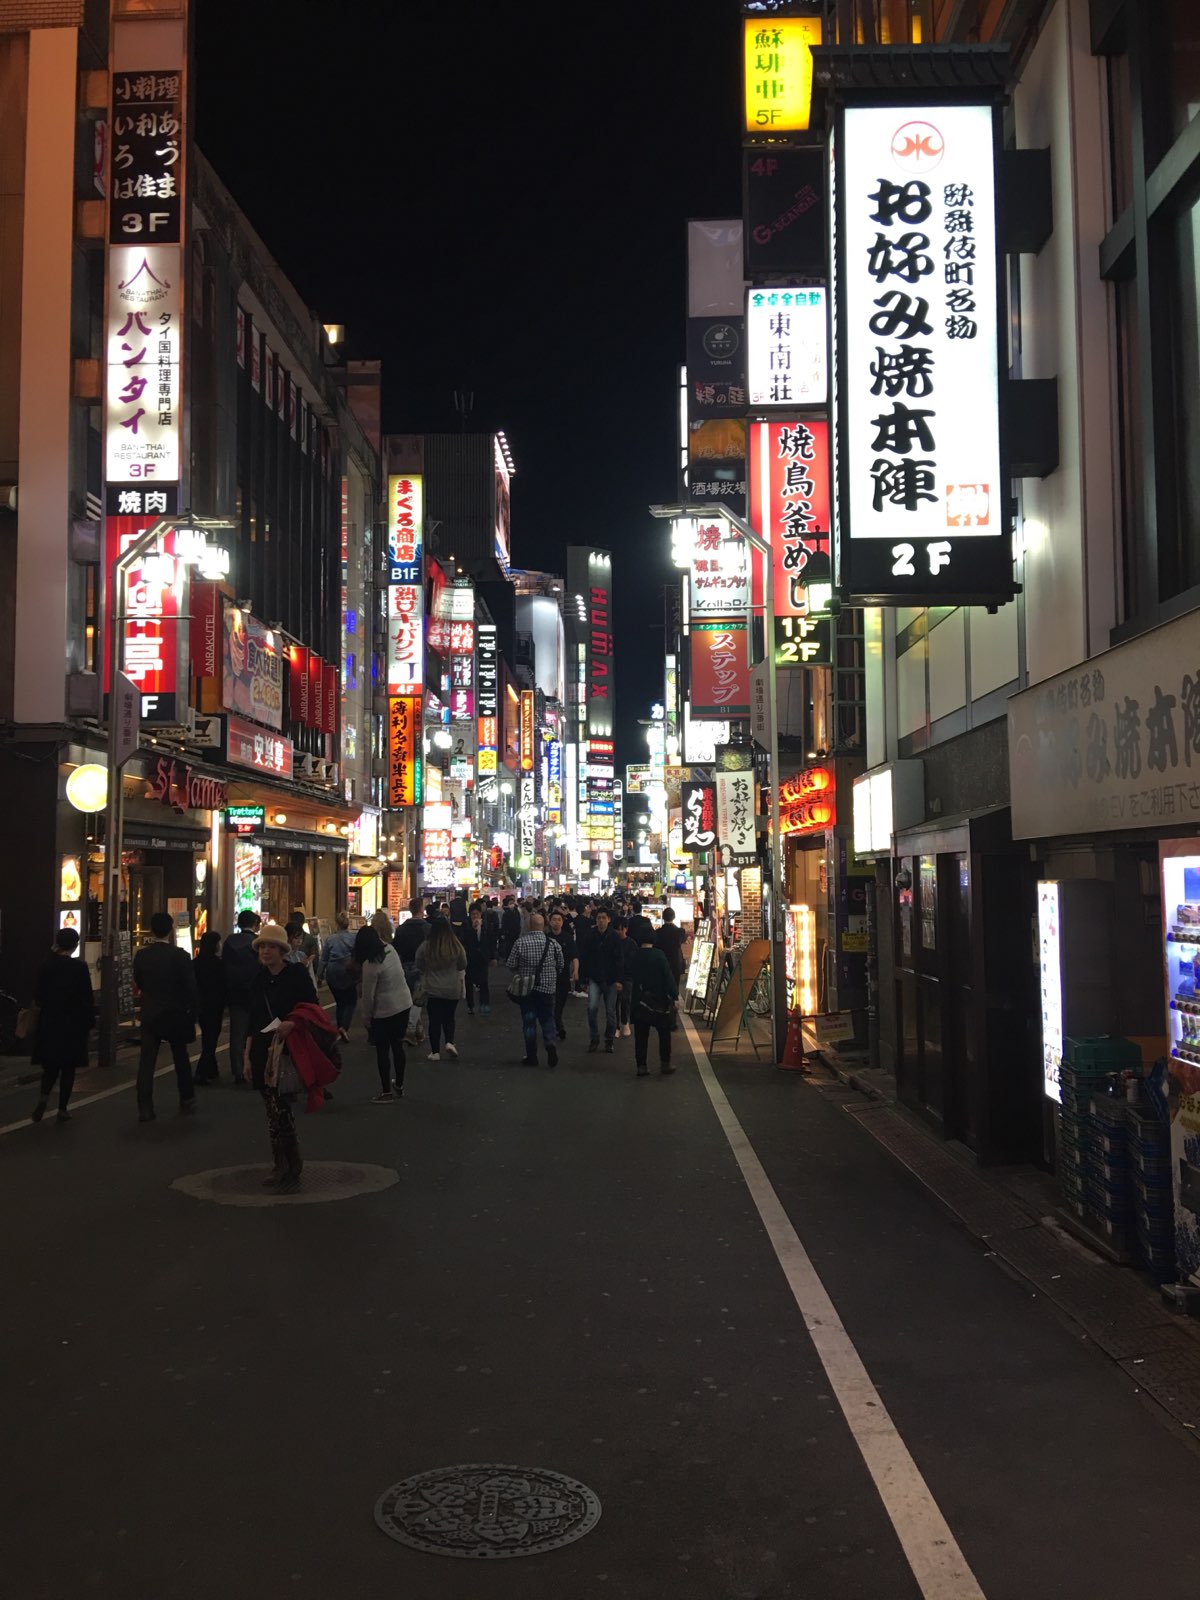 歌舞伎町晚上去和白天去完全两个样，晚上的歌舞伎町就像神秘、激情、诱惑的